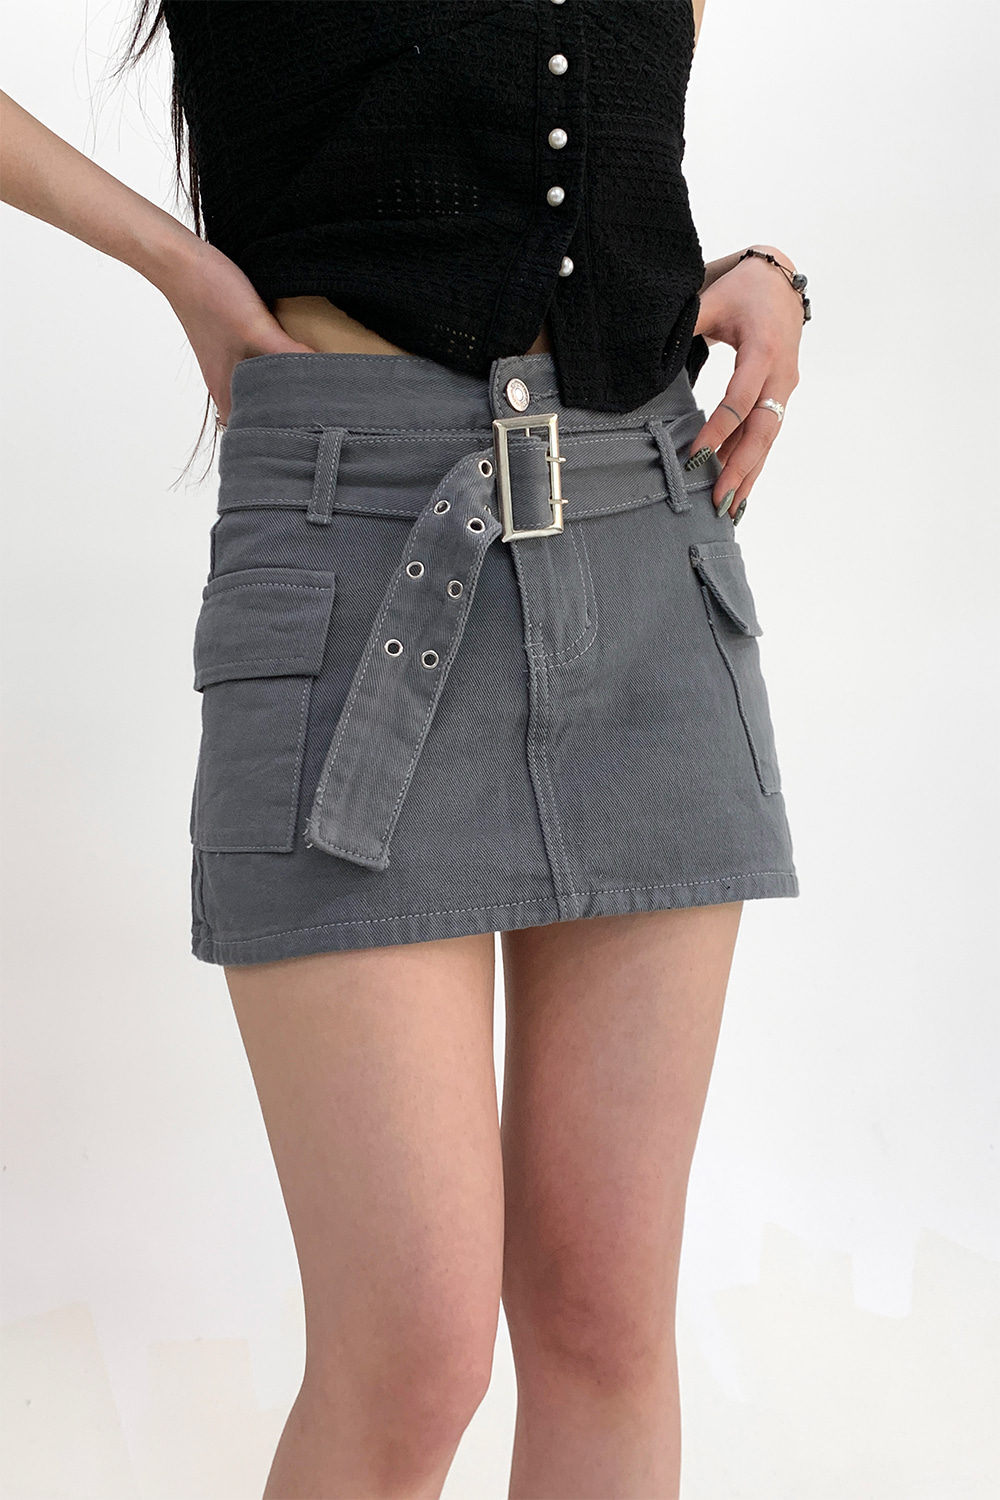 crayon cargo mini skirt (2colors)